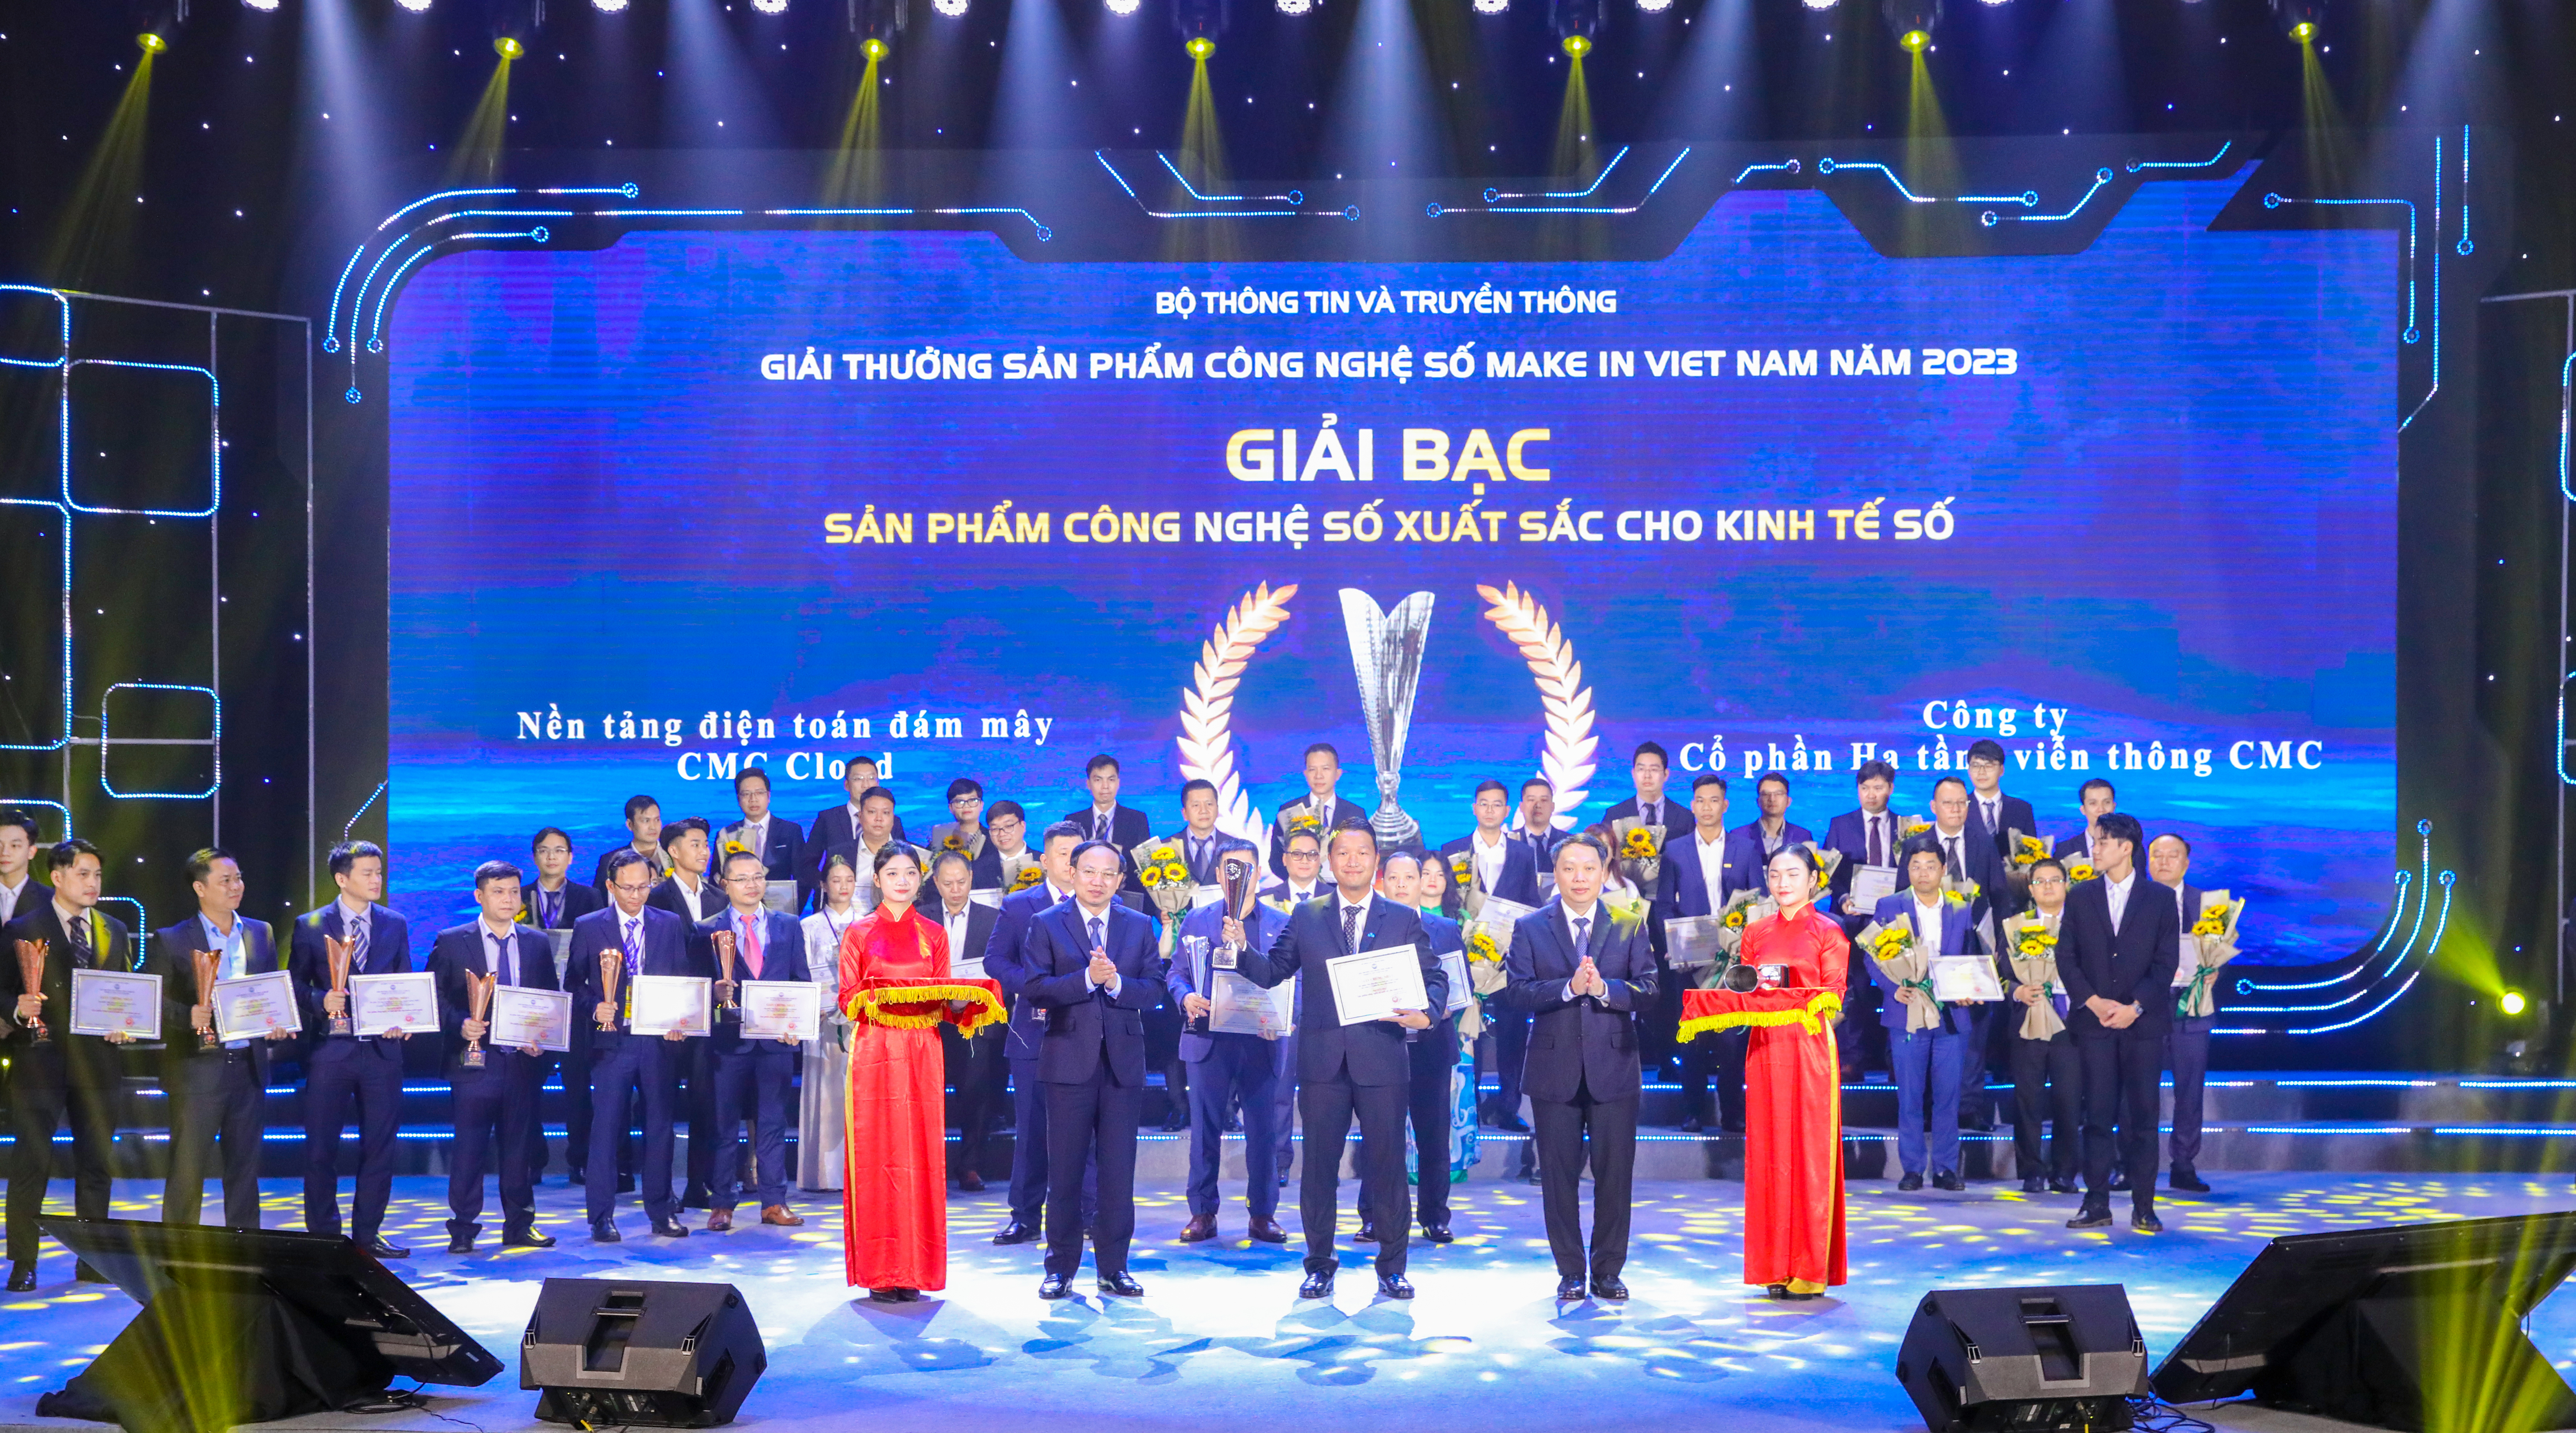 CMC Cloud giành giải Bạc sản phẩm Make in Viet Nam xuất sắc 2023 cho Kinh tế số